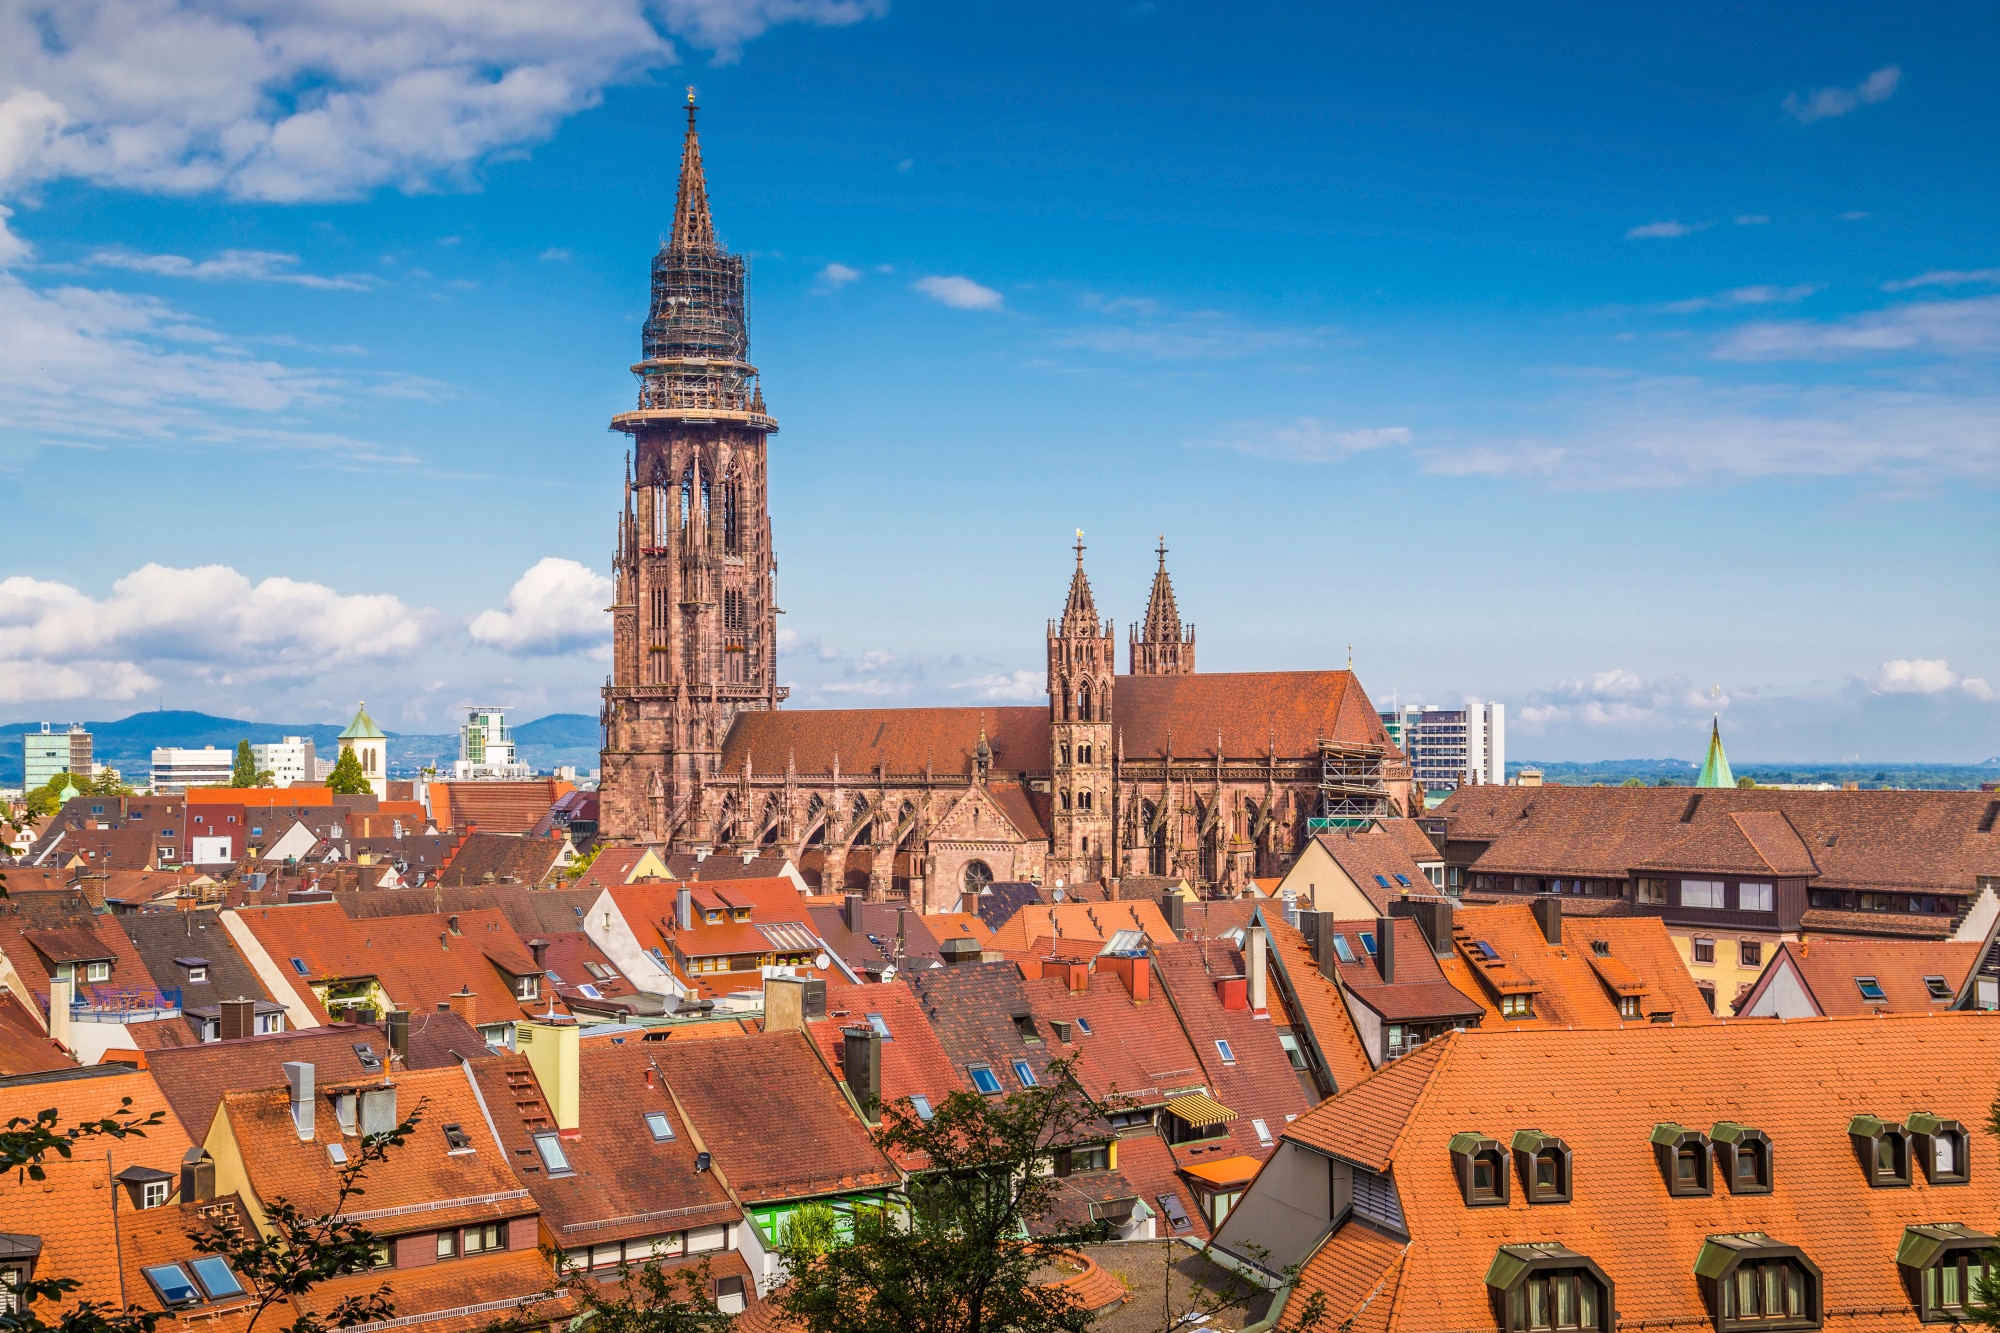 Historic town of Freiburg im Breisgau